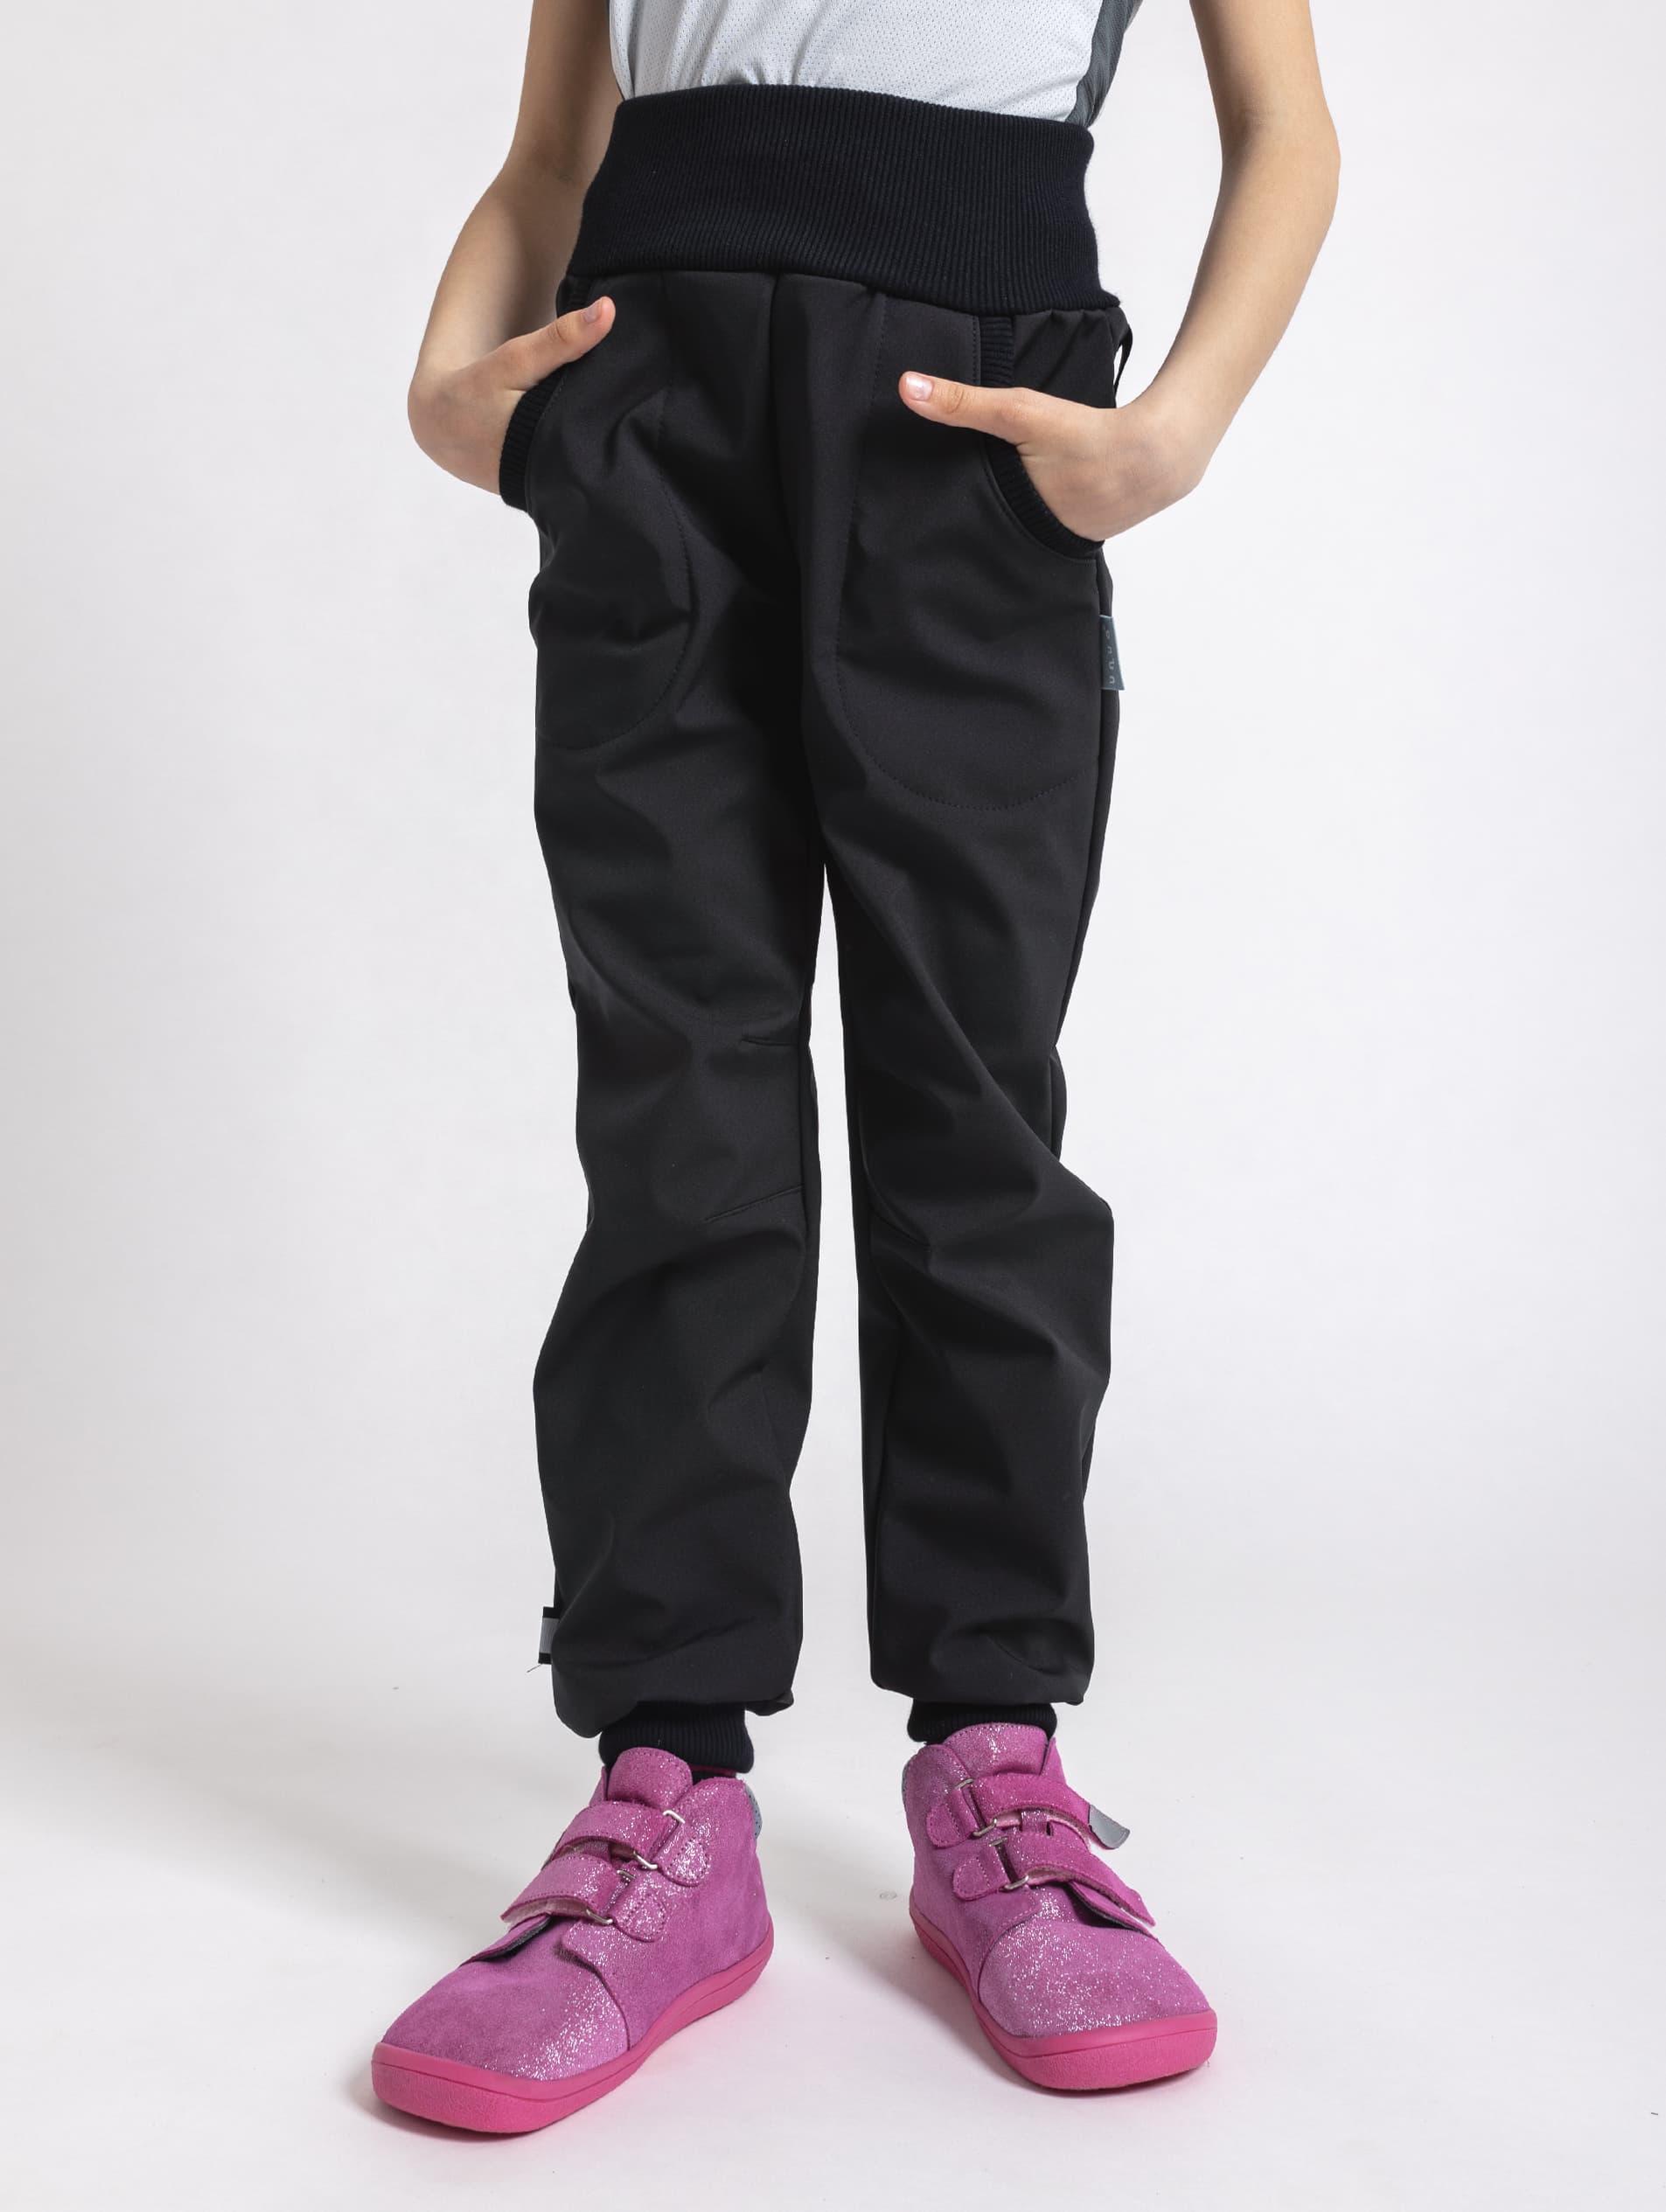 UNUO Softshellové kalhoty s fleecem STREET, černé Velikost: 146 - 152